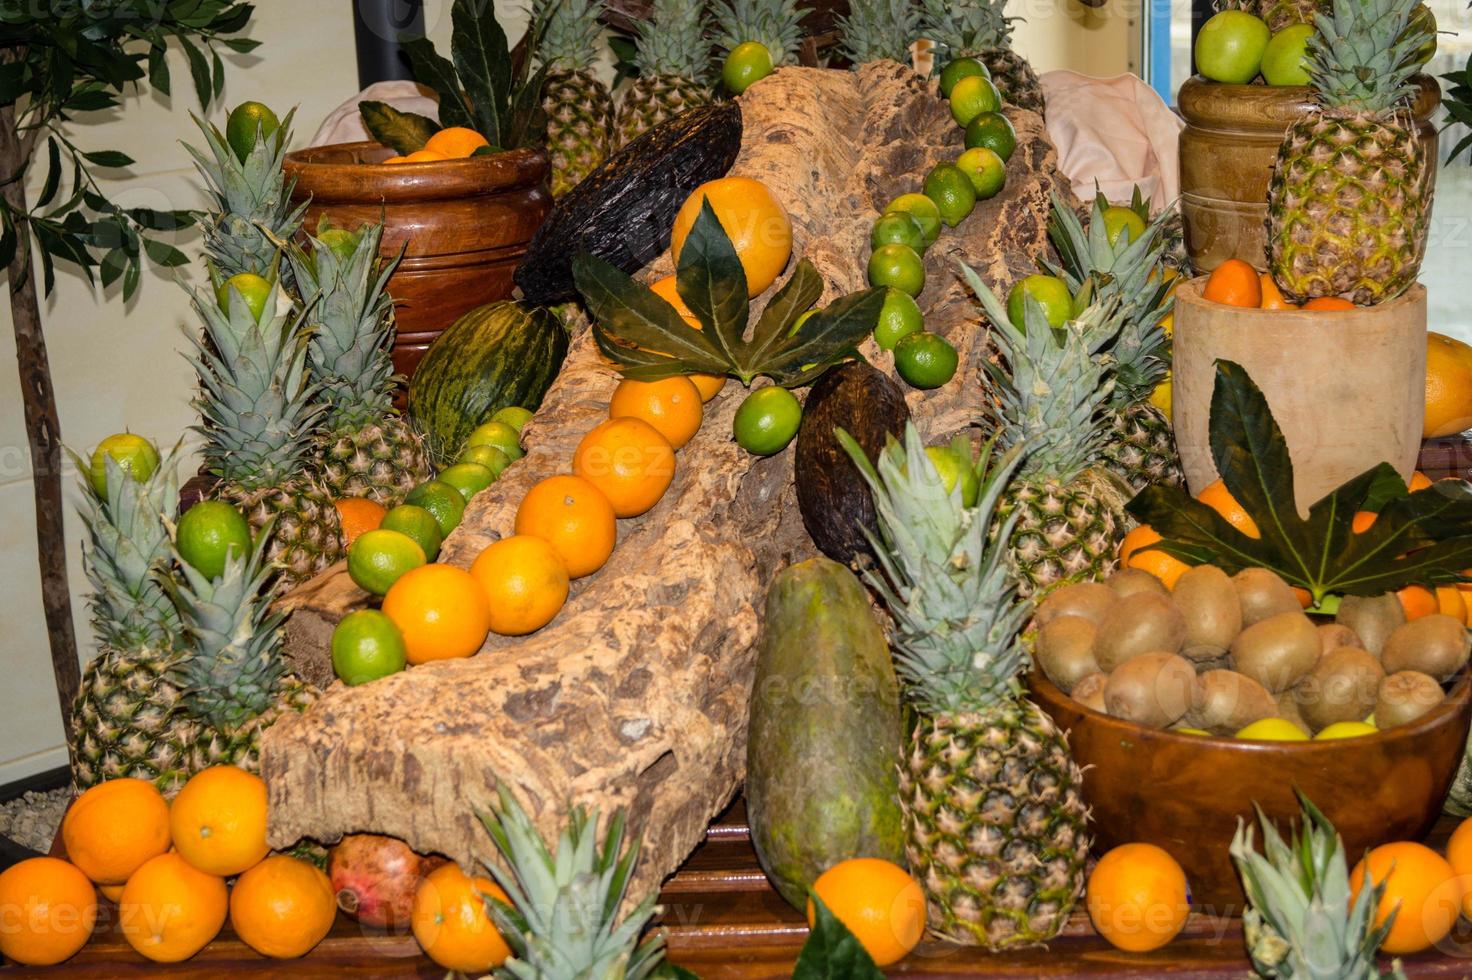 mamão e outras frutas em um mercado foto